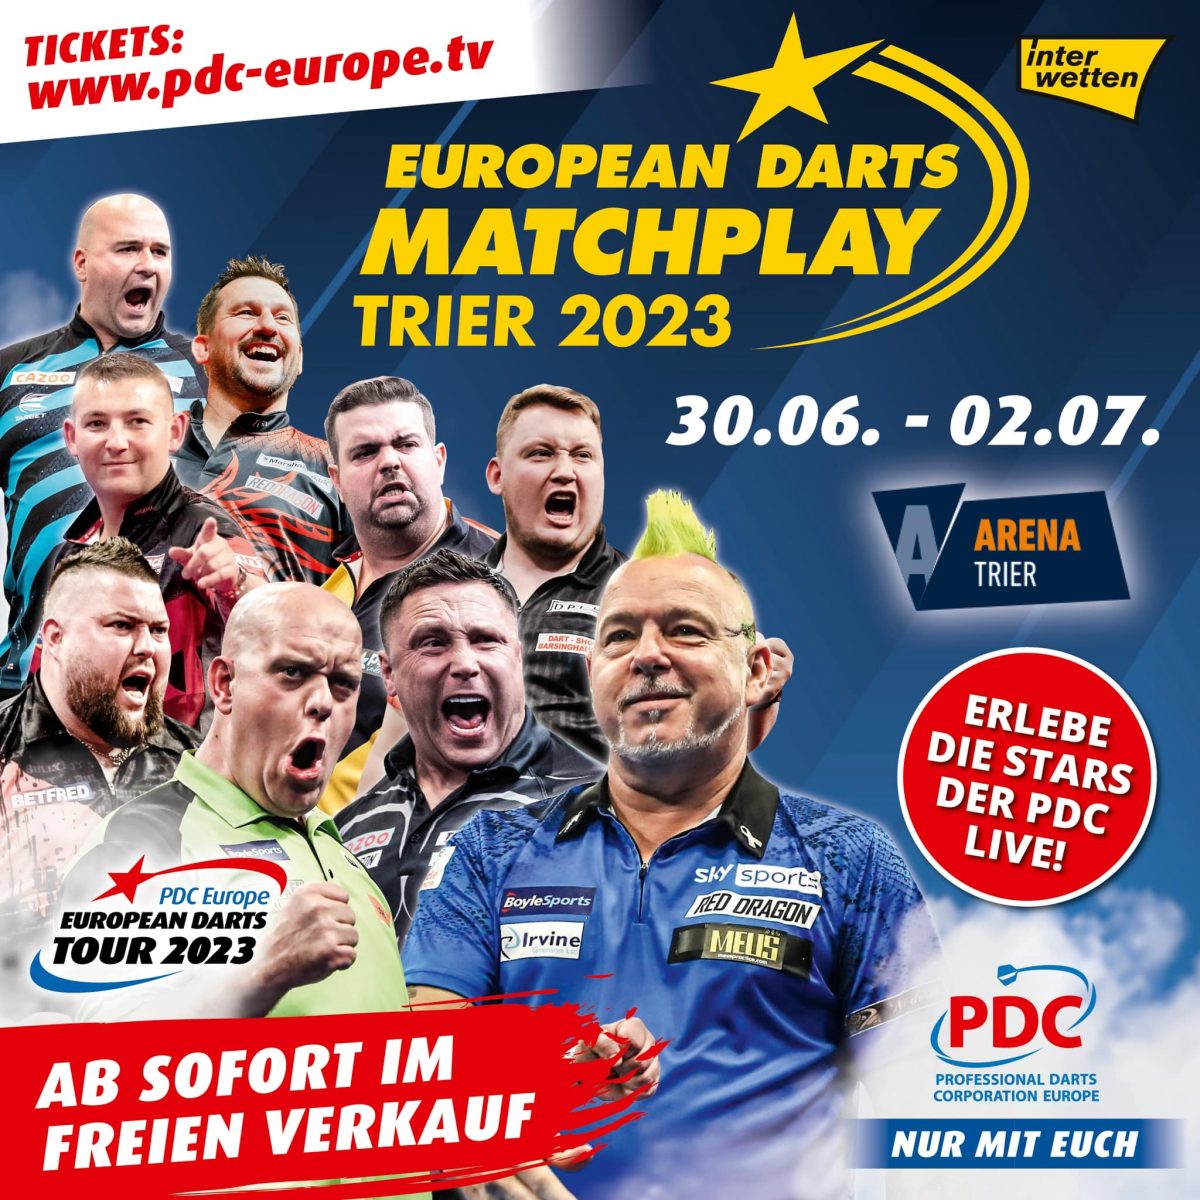 PDC European Darts Matchplay Trier: VIP-Tickets jetzt verfügbar